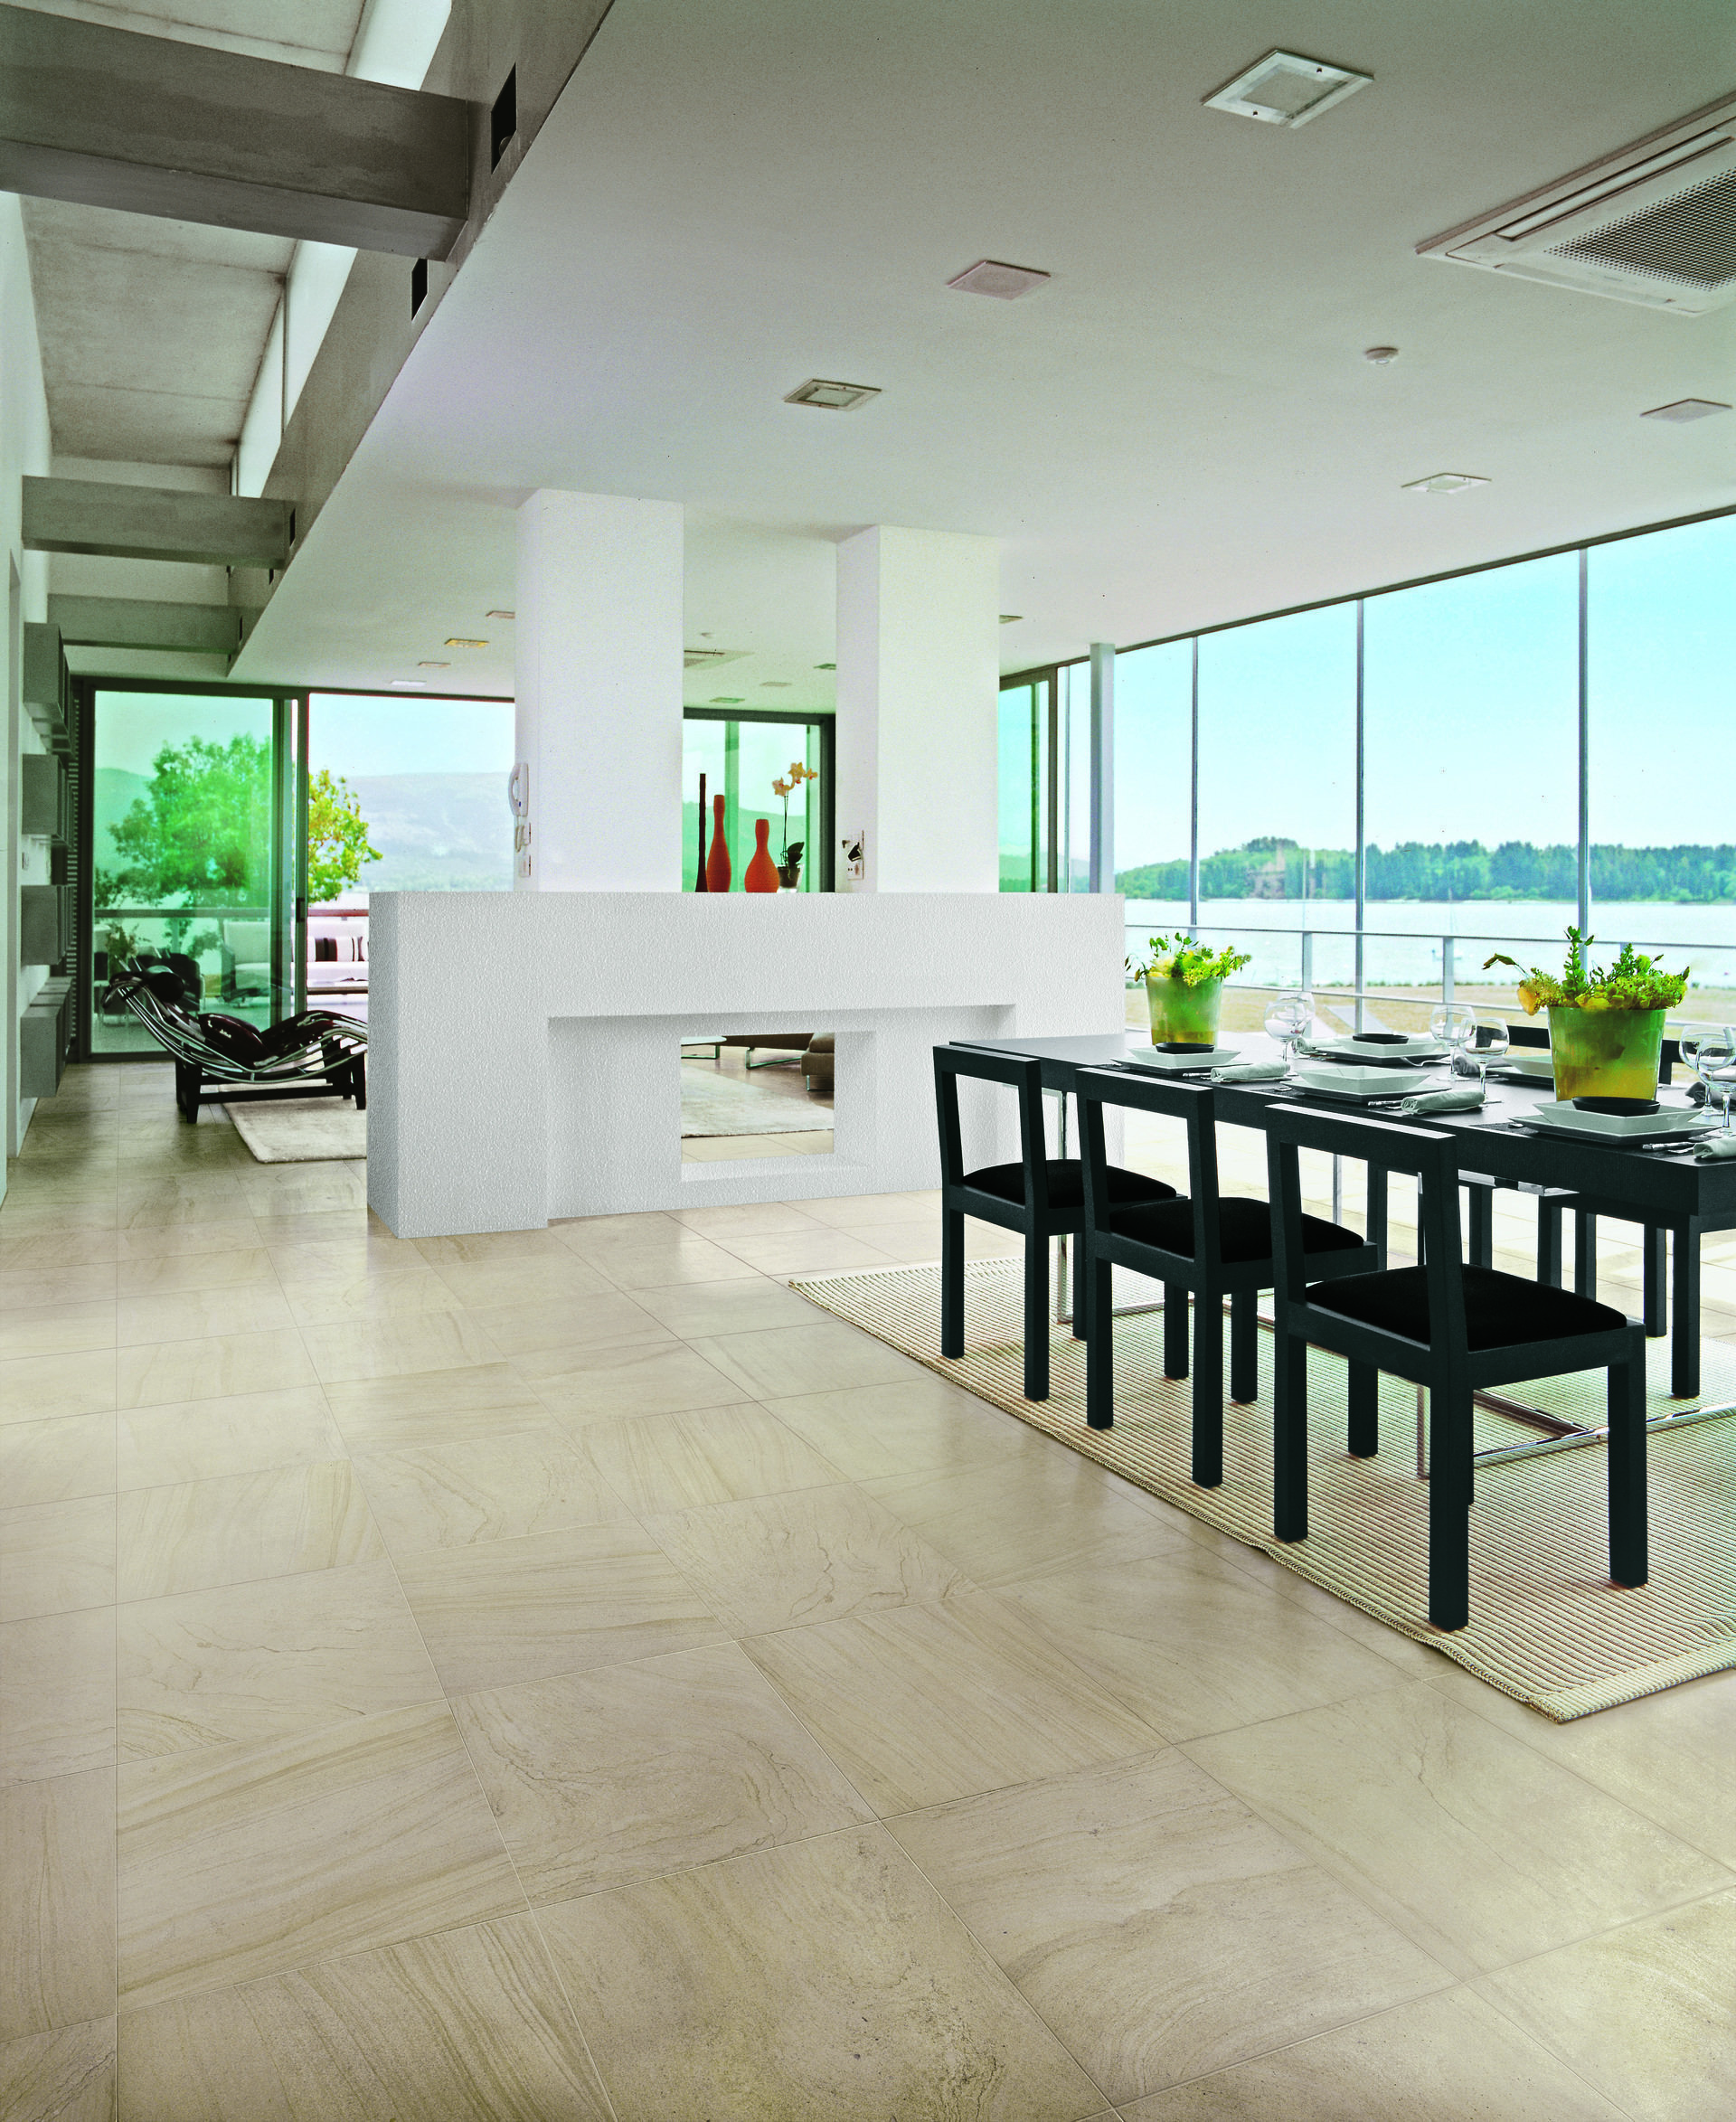 Specify Commercially Rated Porcelain Tiles for Hardwearing Floors EBOSS